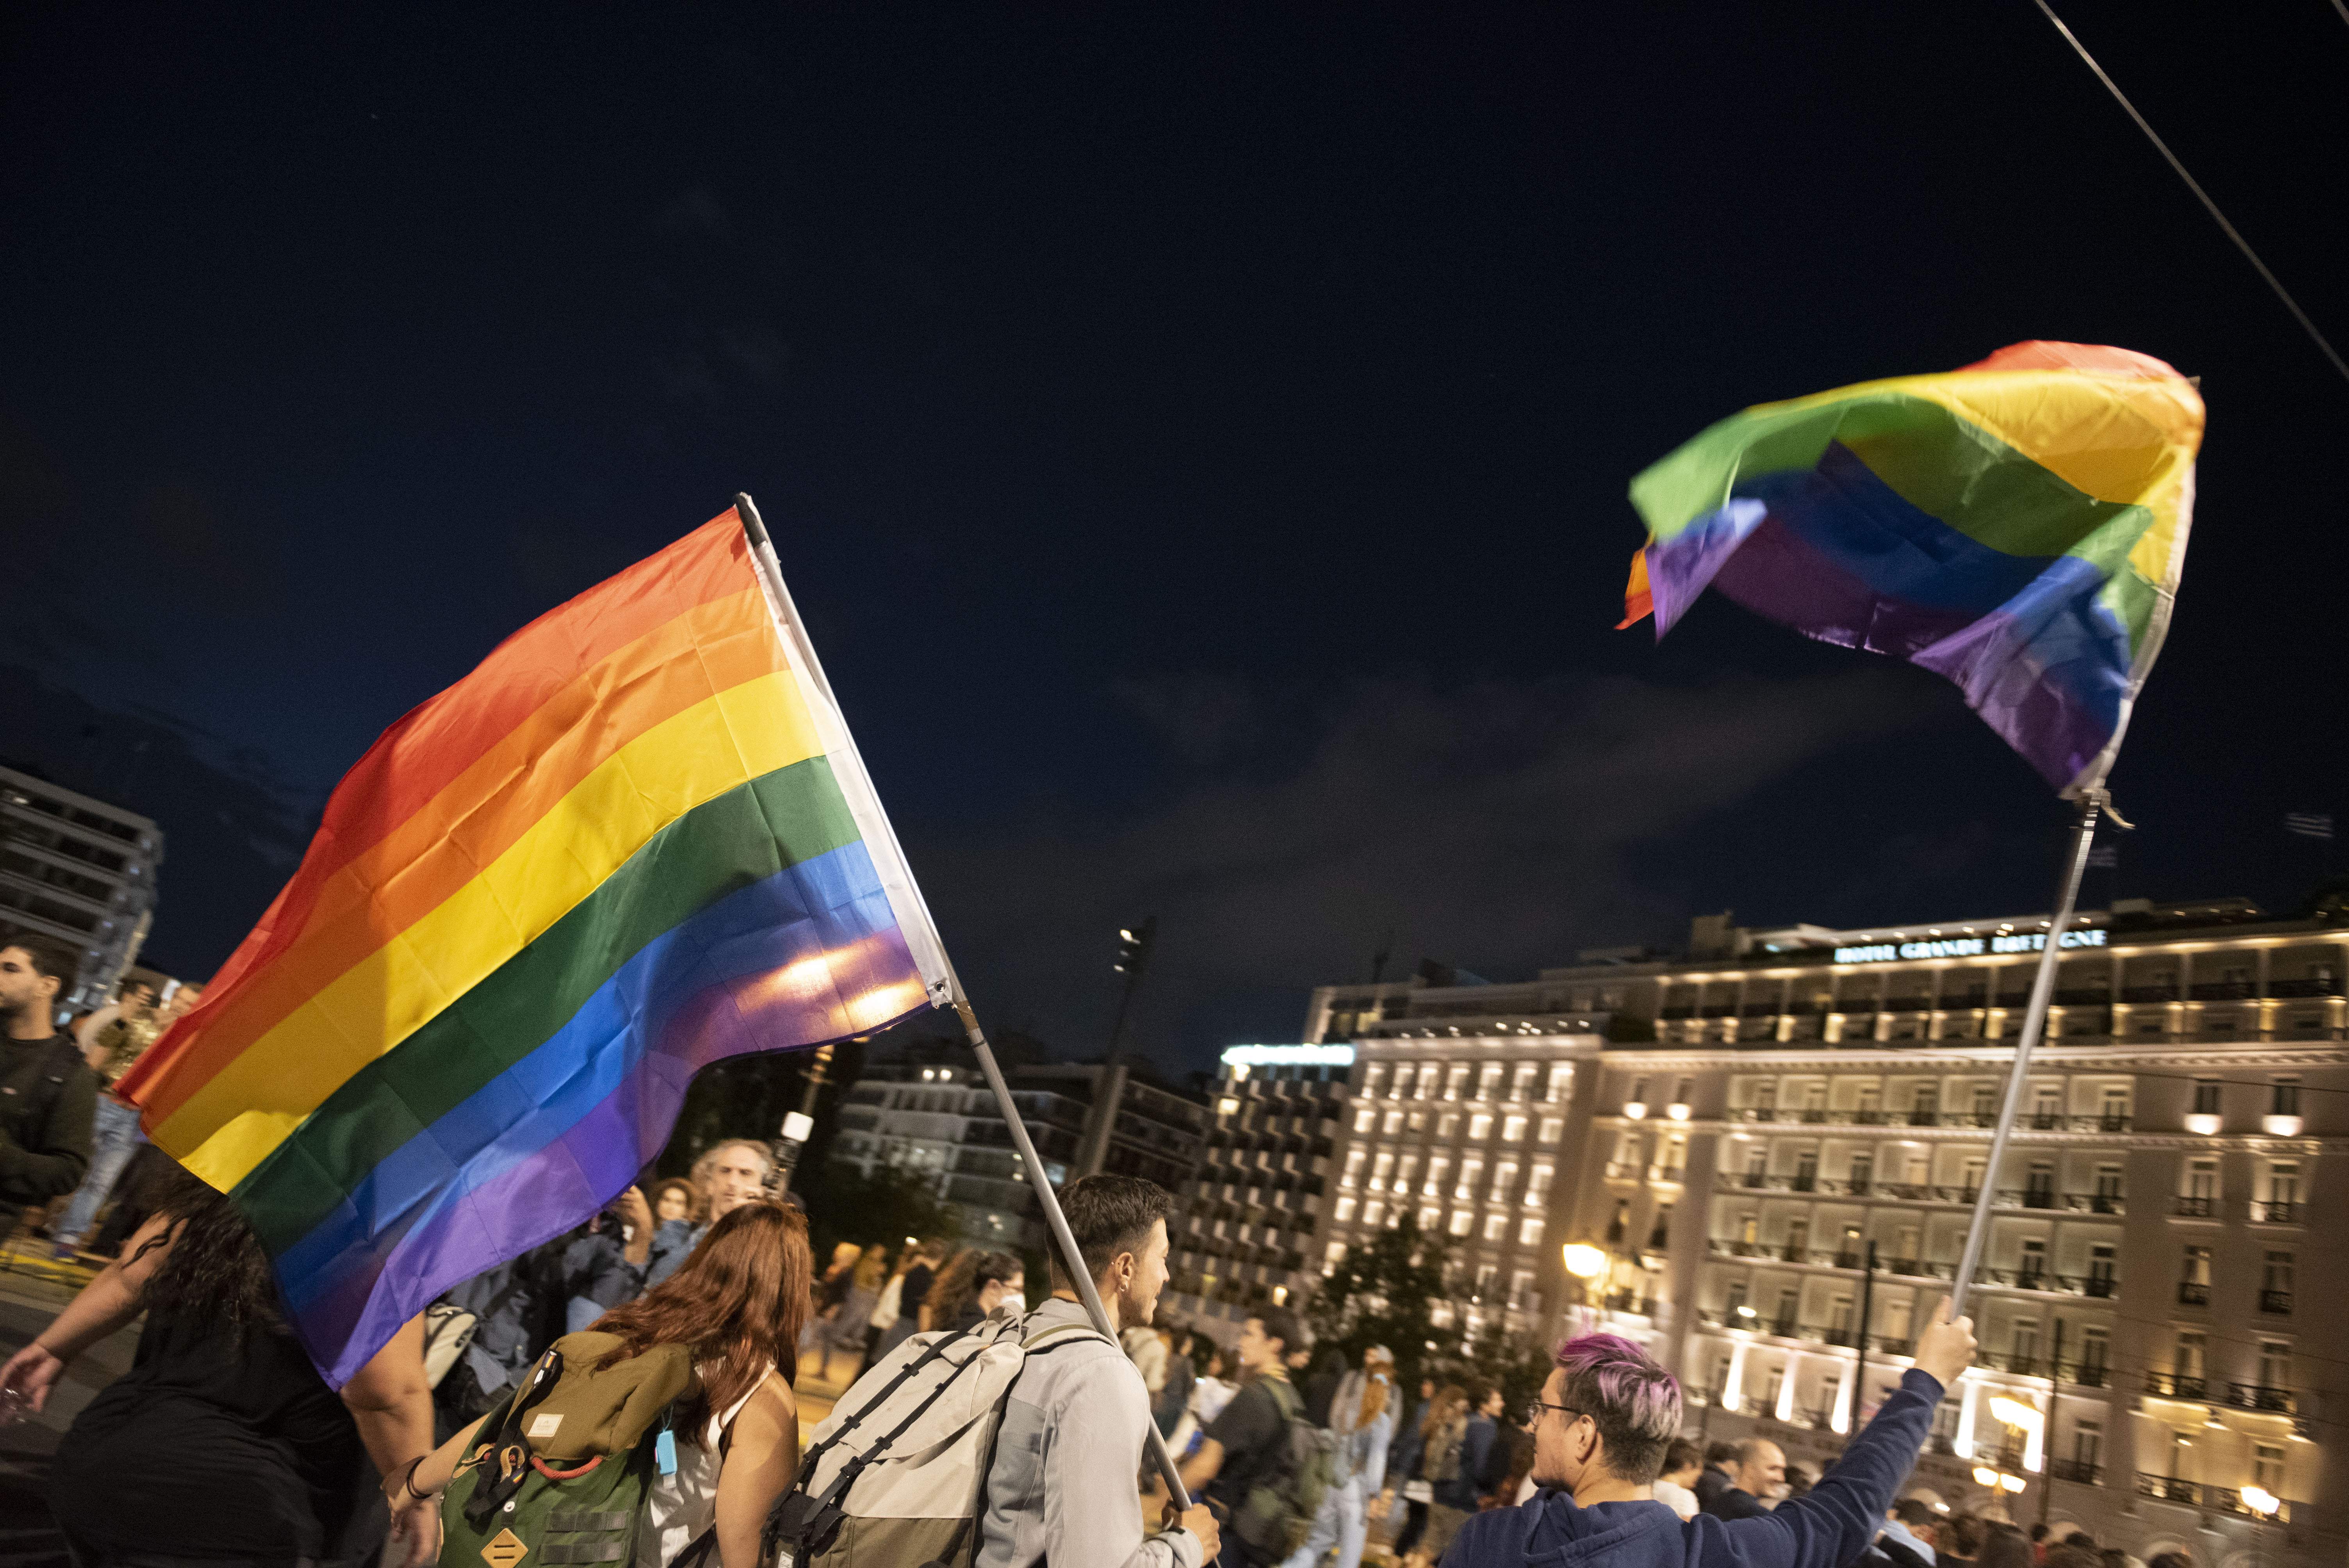 La iglesia ortodoxa griega pide excomulgar a los diputados que votaron a favor del matrimonio homosexual